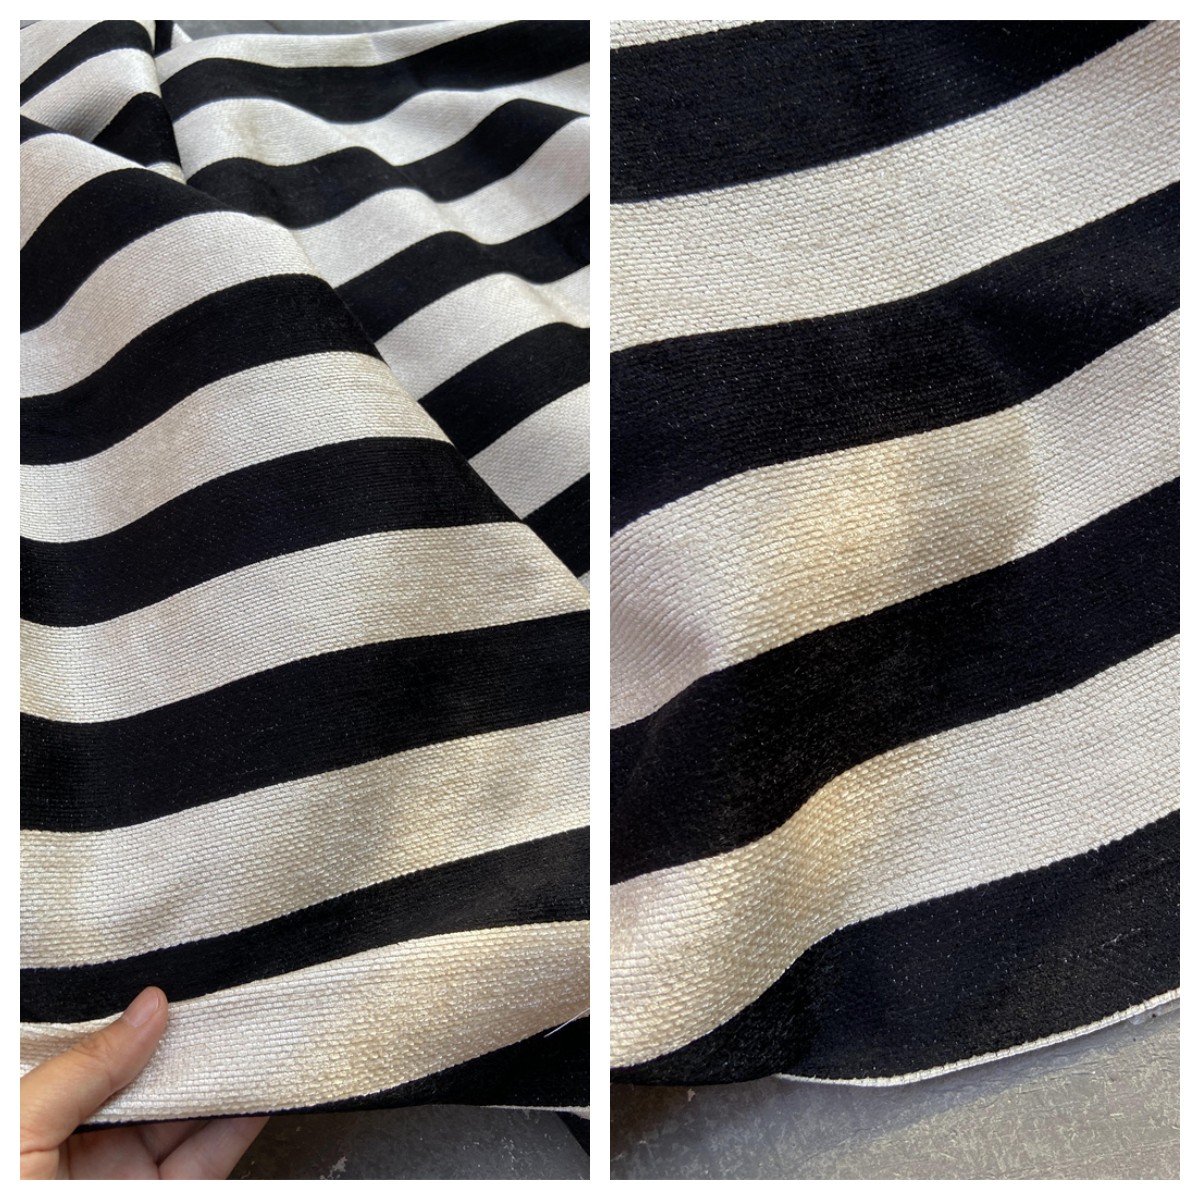 米白黑色款条纹韩国进口棉混纺平绒时装面料设计师外套裙裤子布料